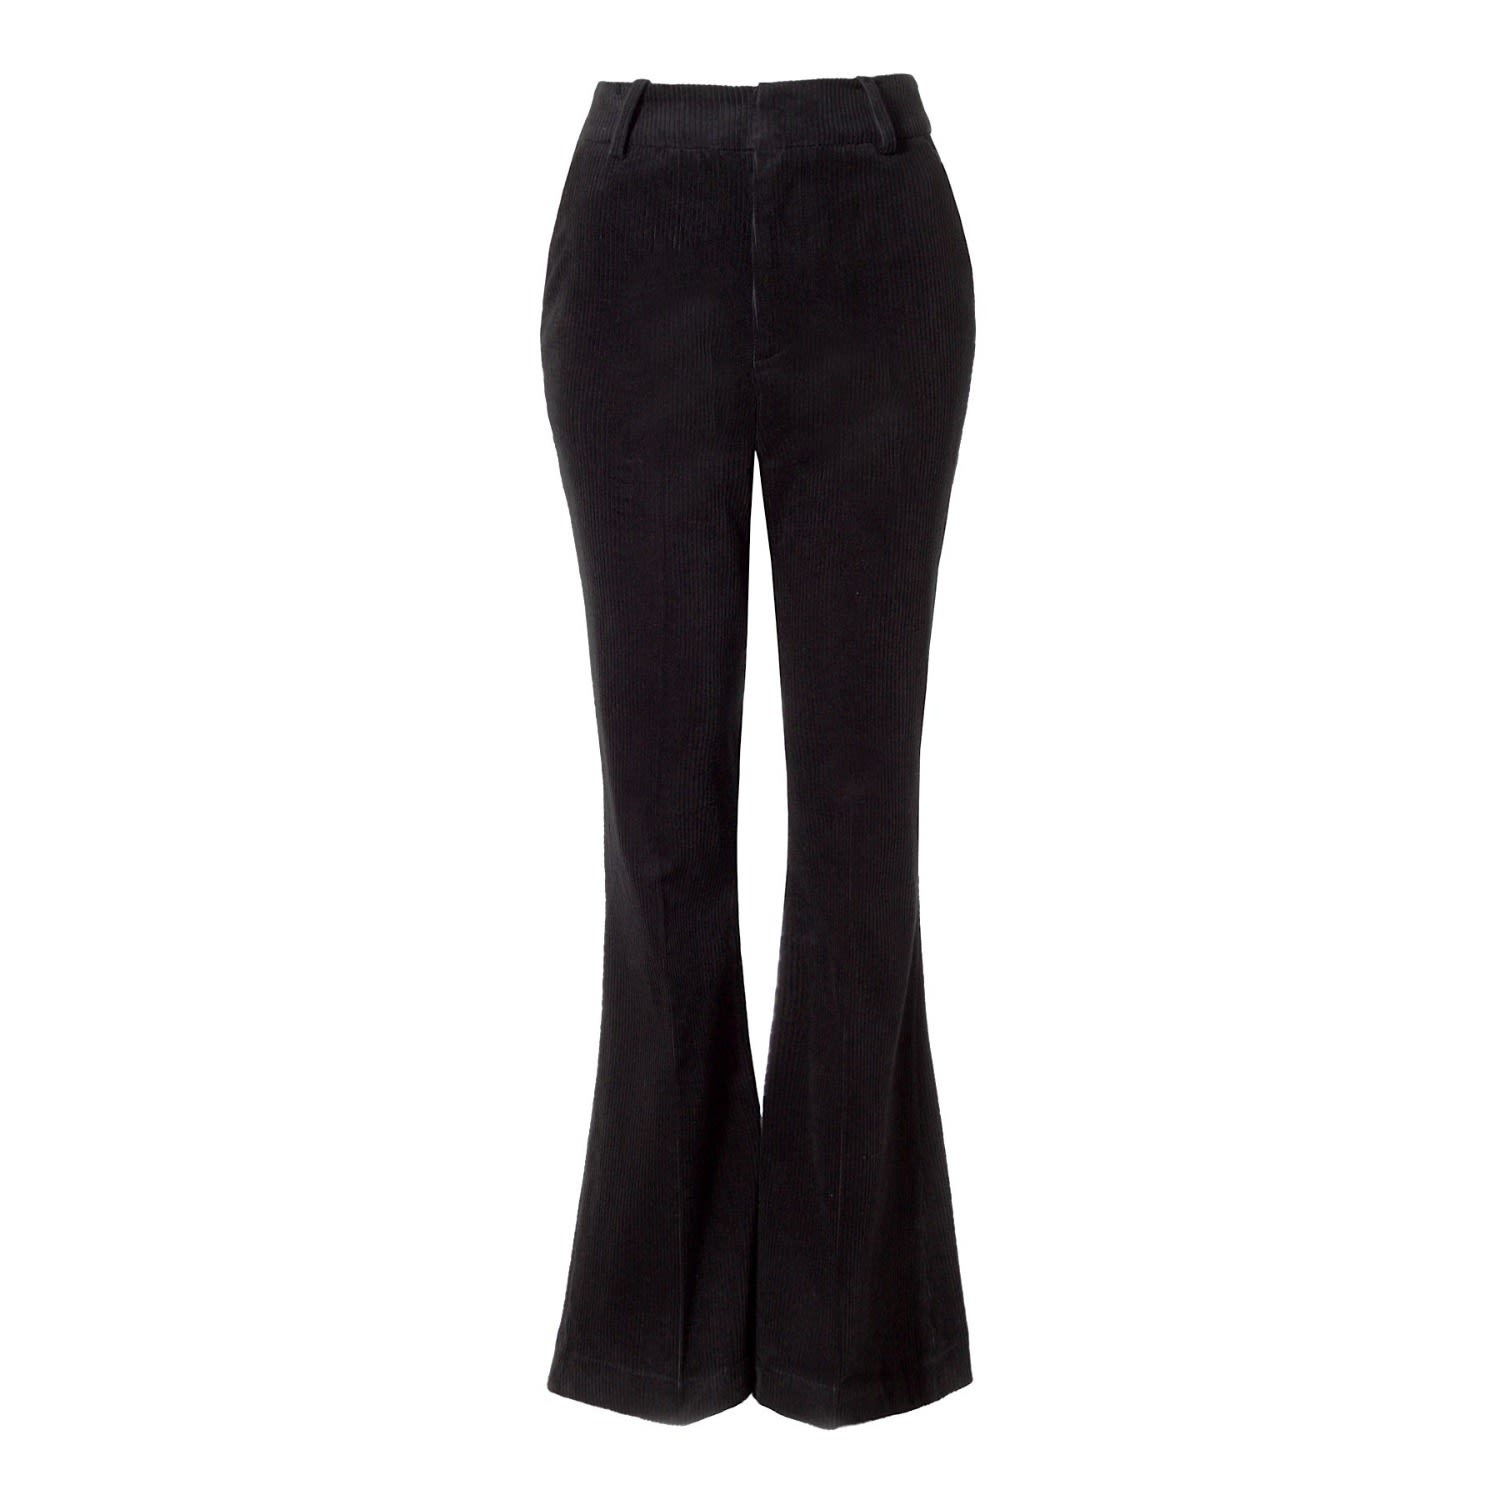 Aggi Women's Black Jane Metropolis Trousers - Long